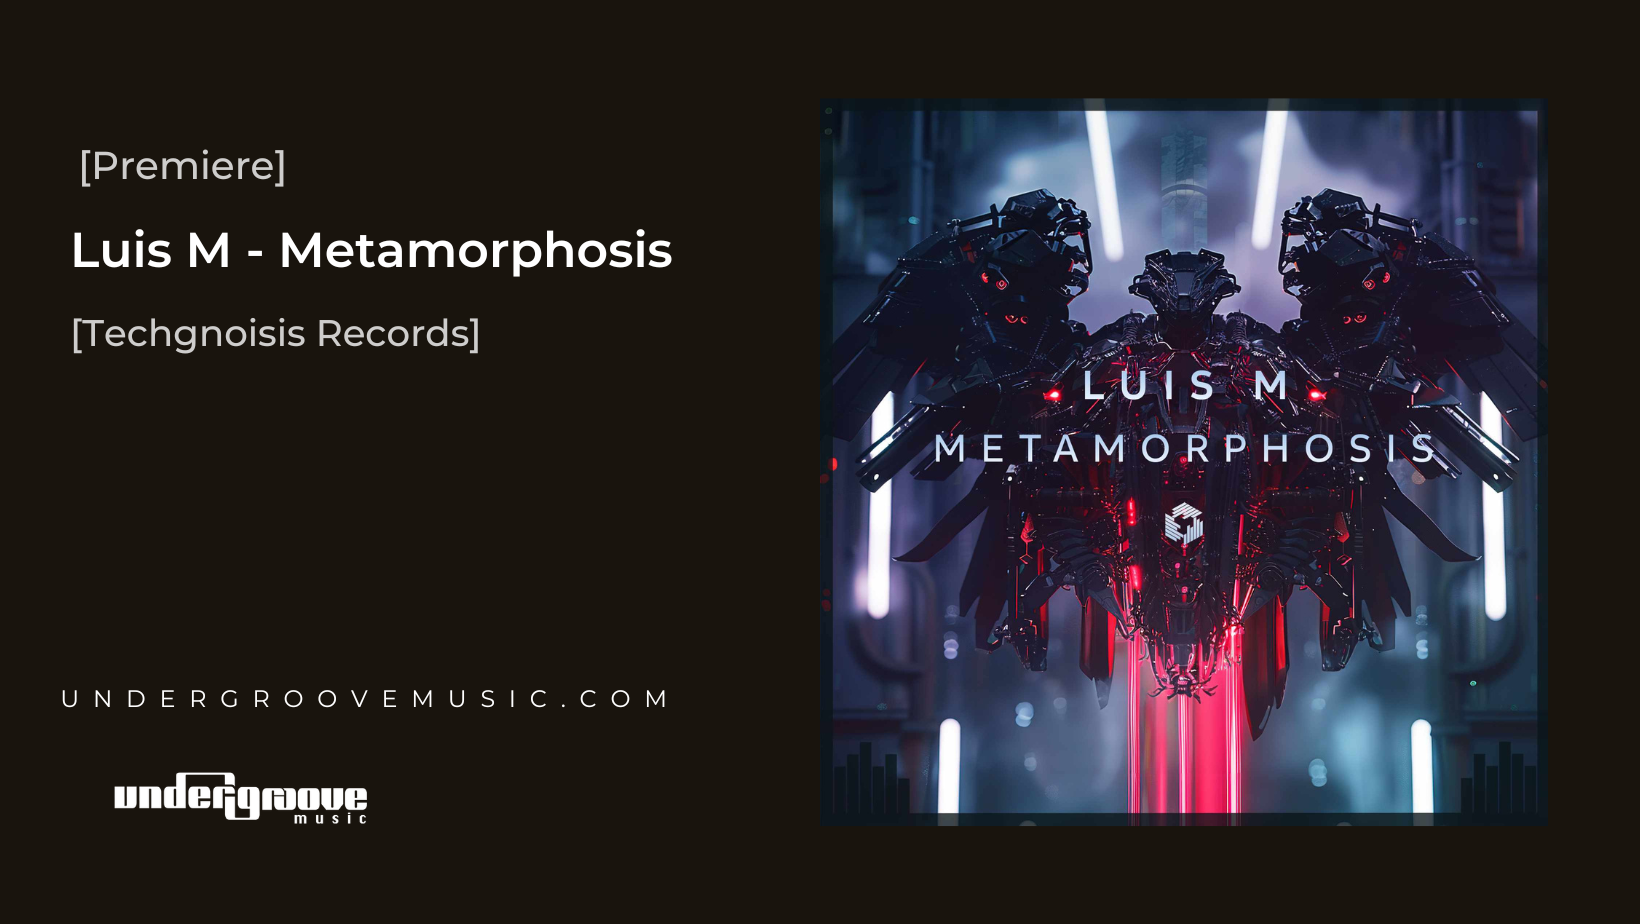 Luis M, Metamorphosis